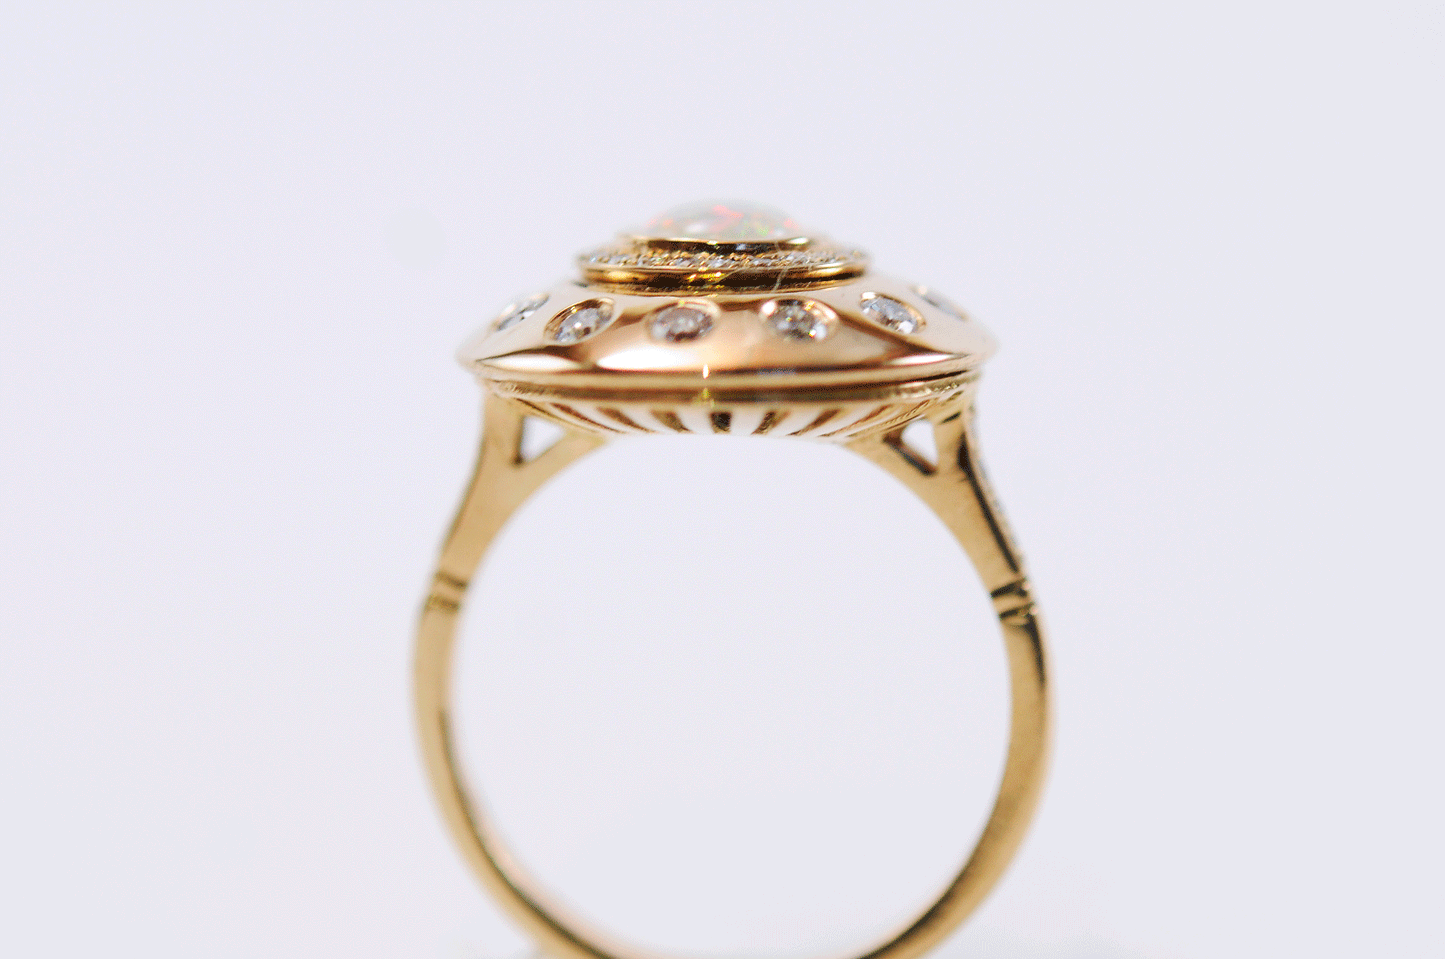 NASA Engagement Ring